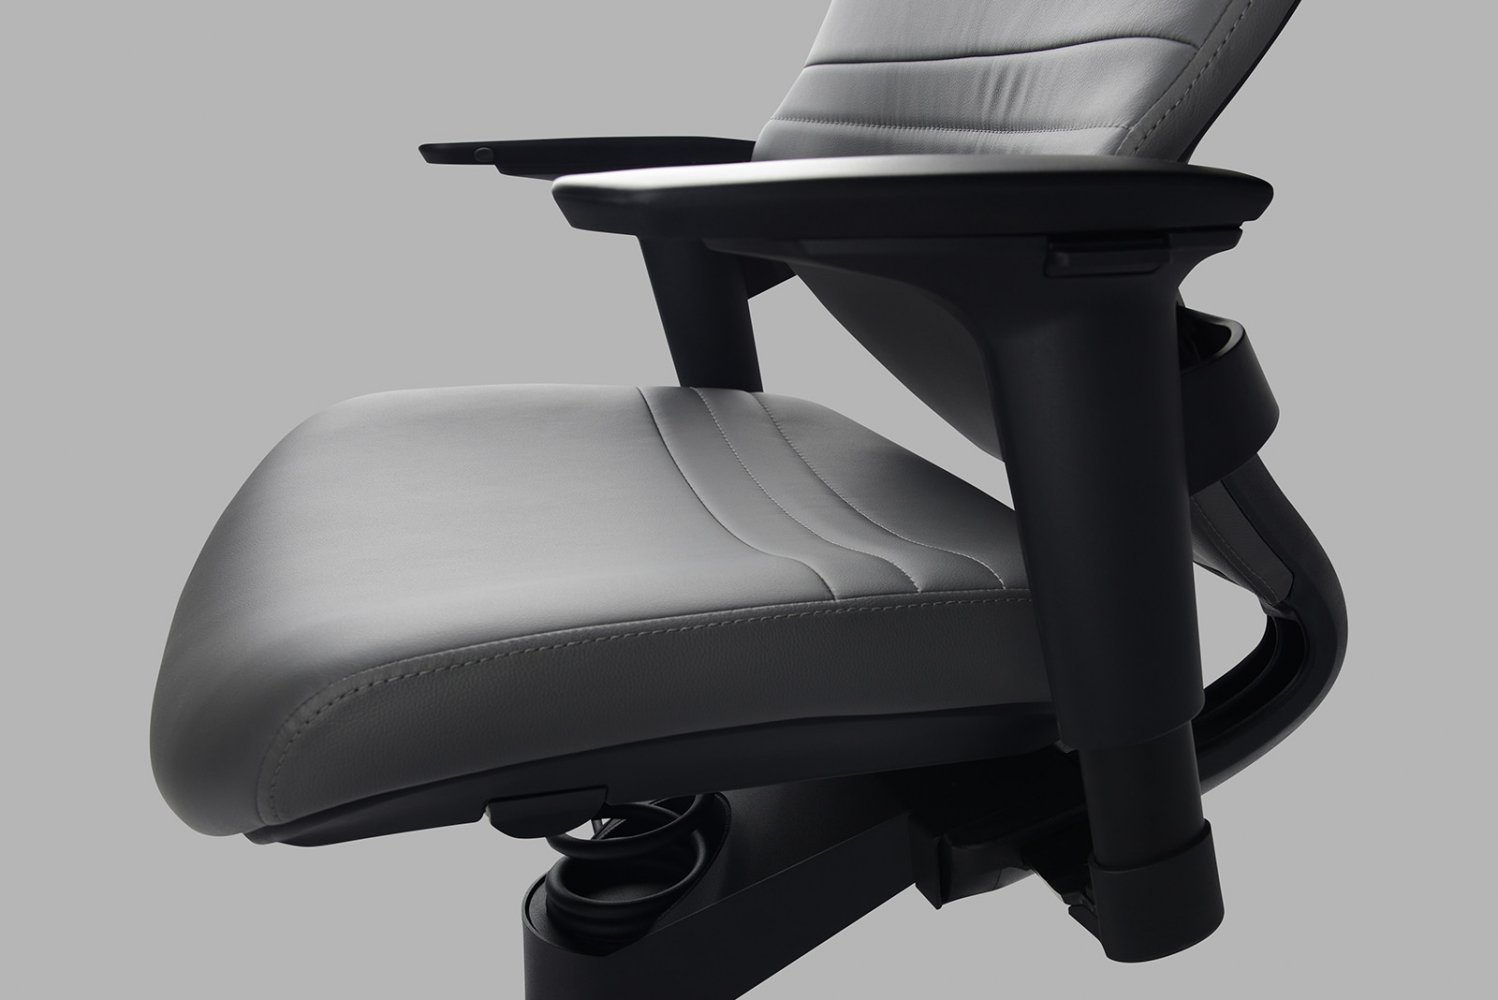 Adaptic Style kancelárska zdravotná stolička